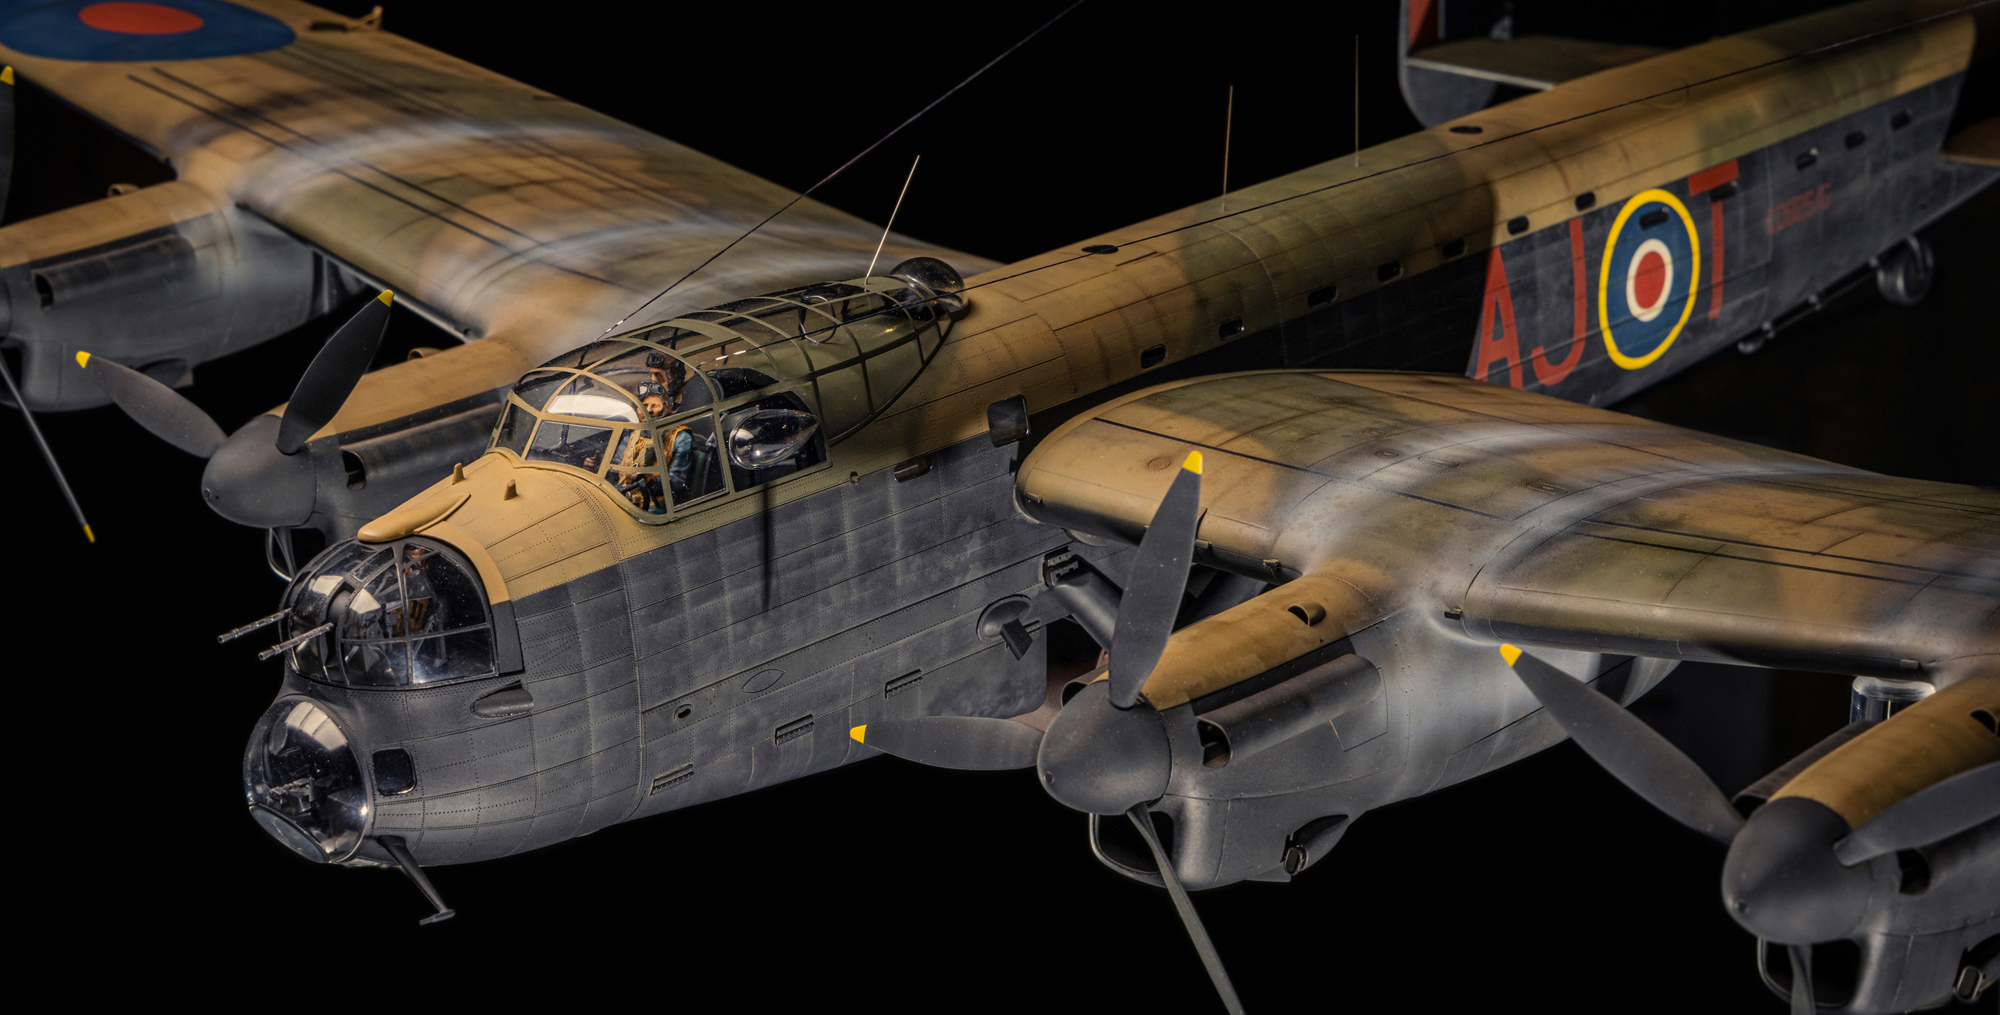 Lancaster bomber model